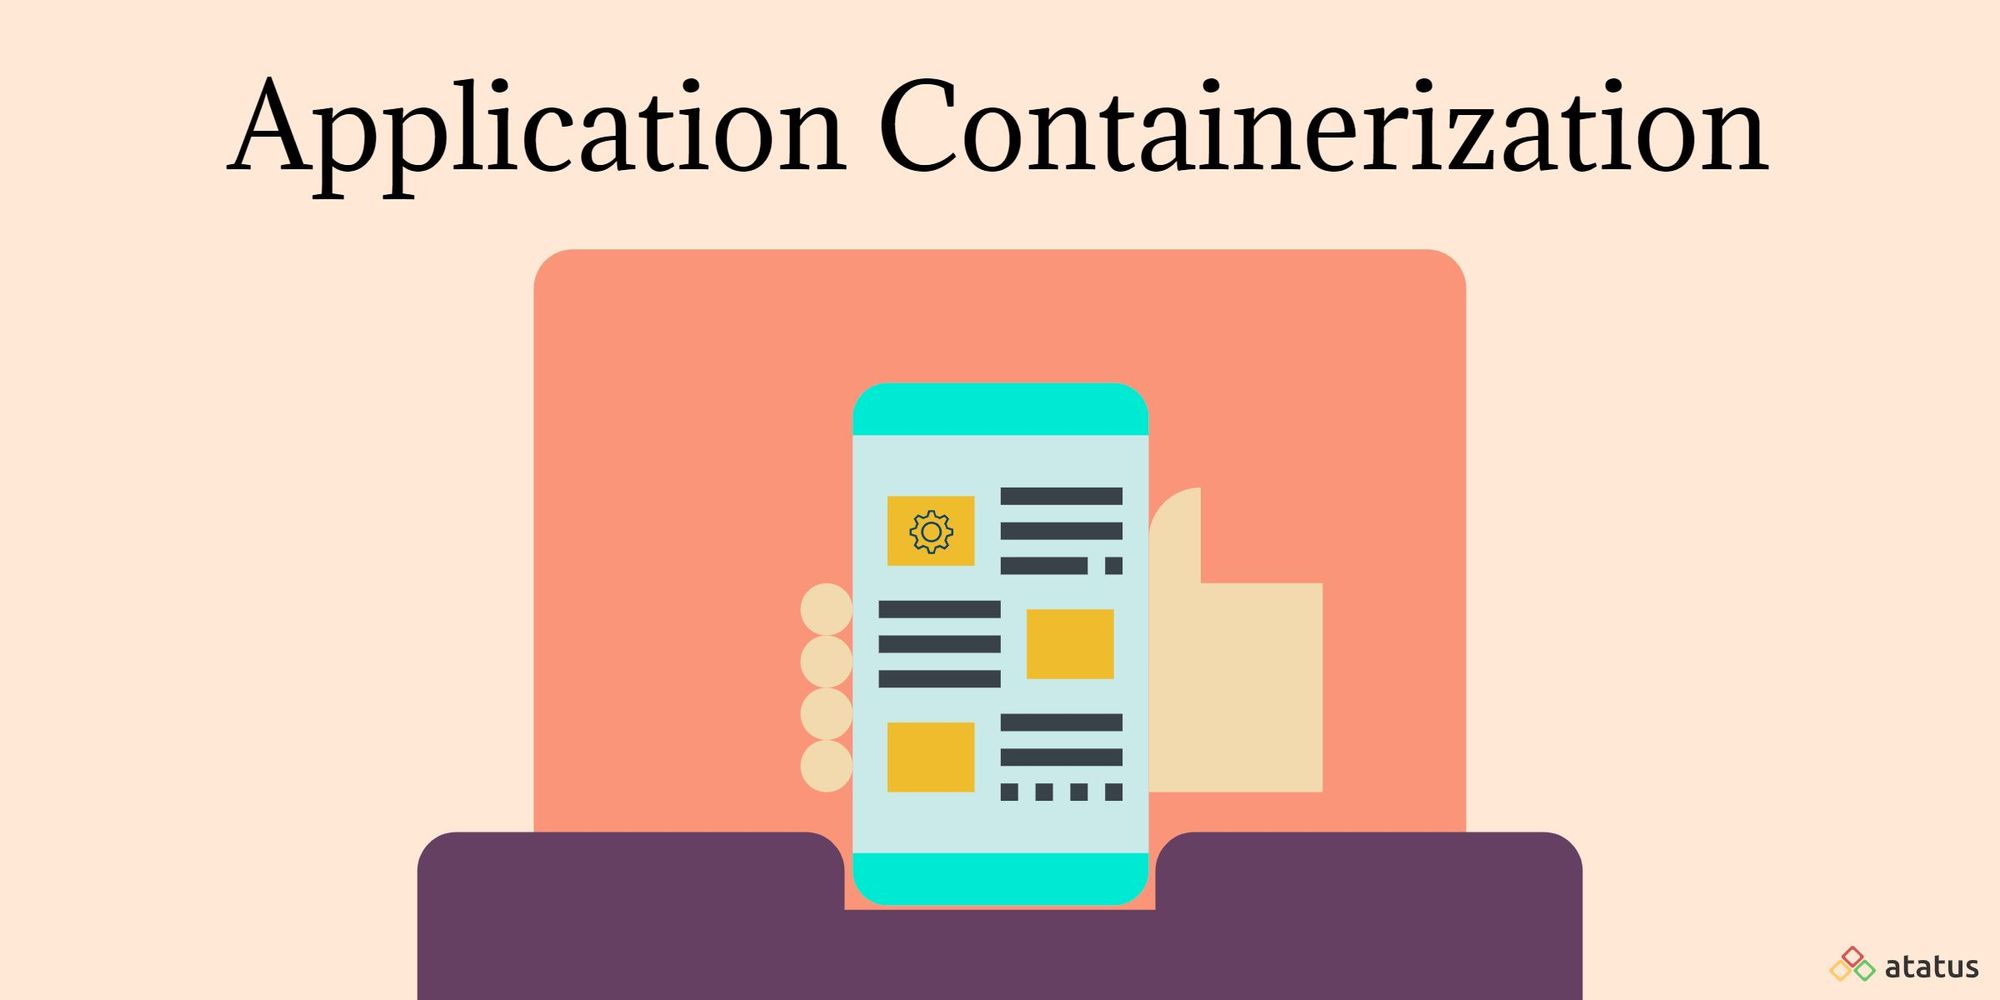 containerization vs virtualization